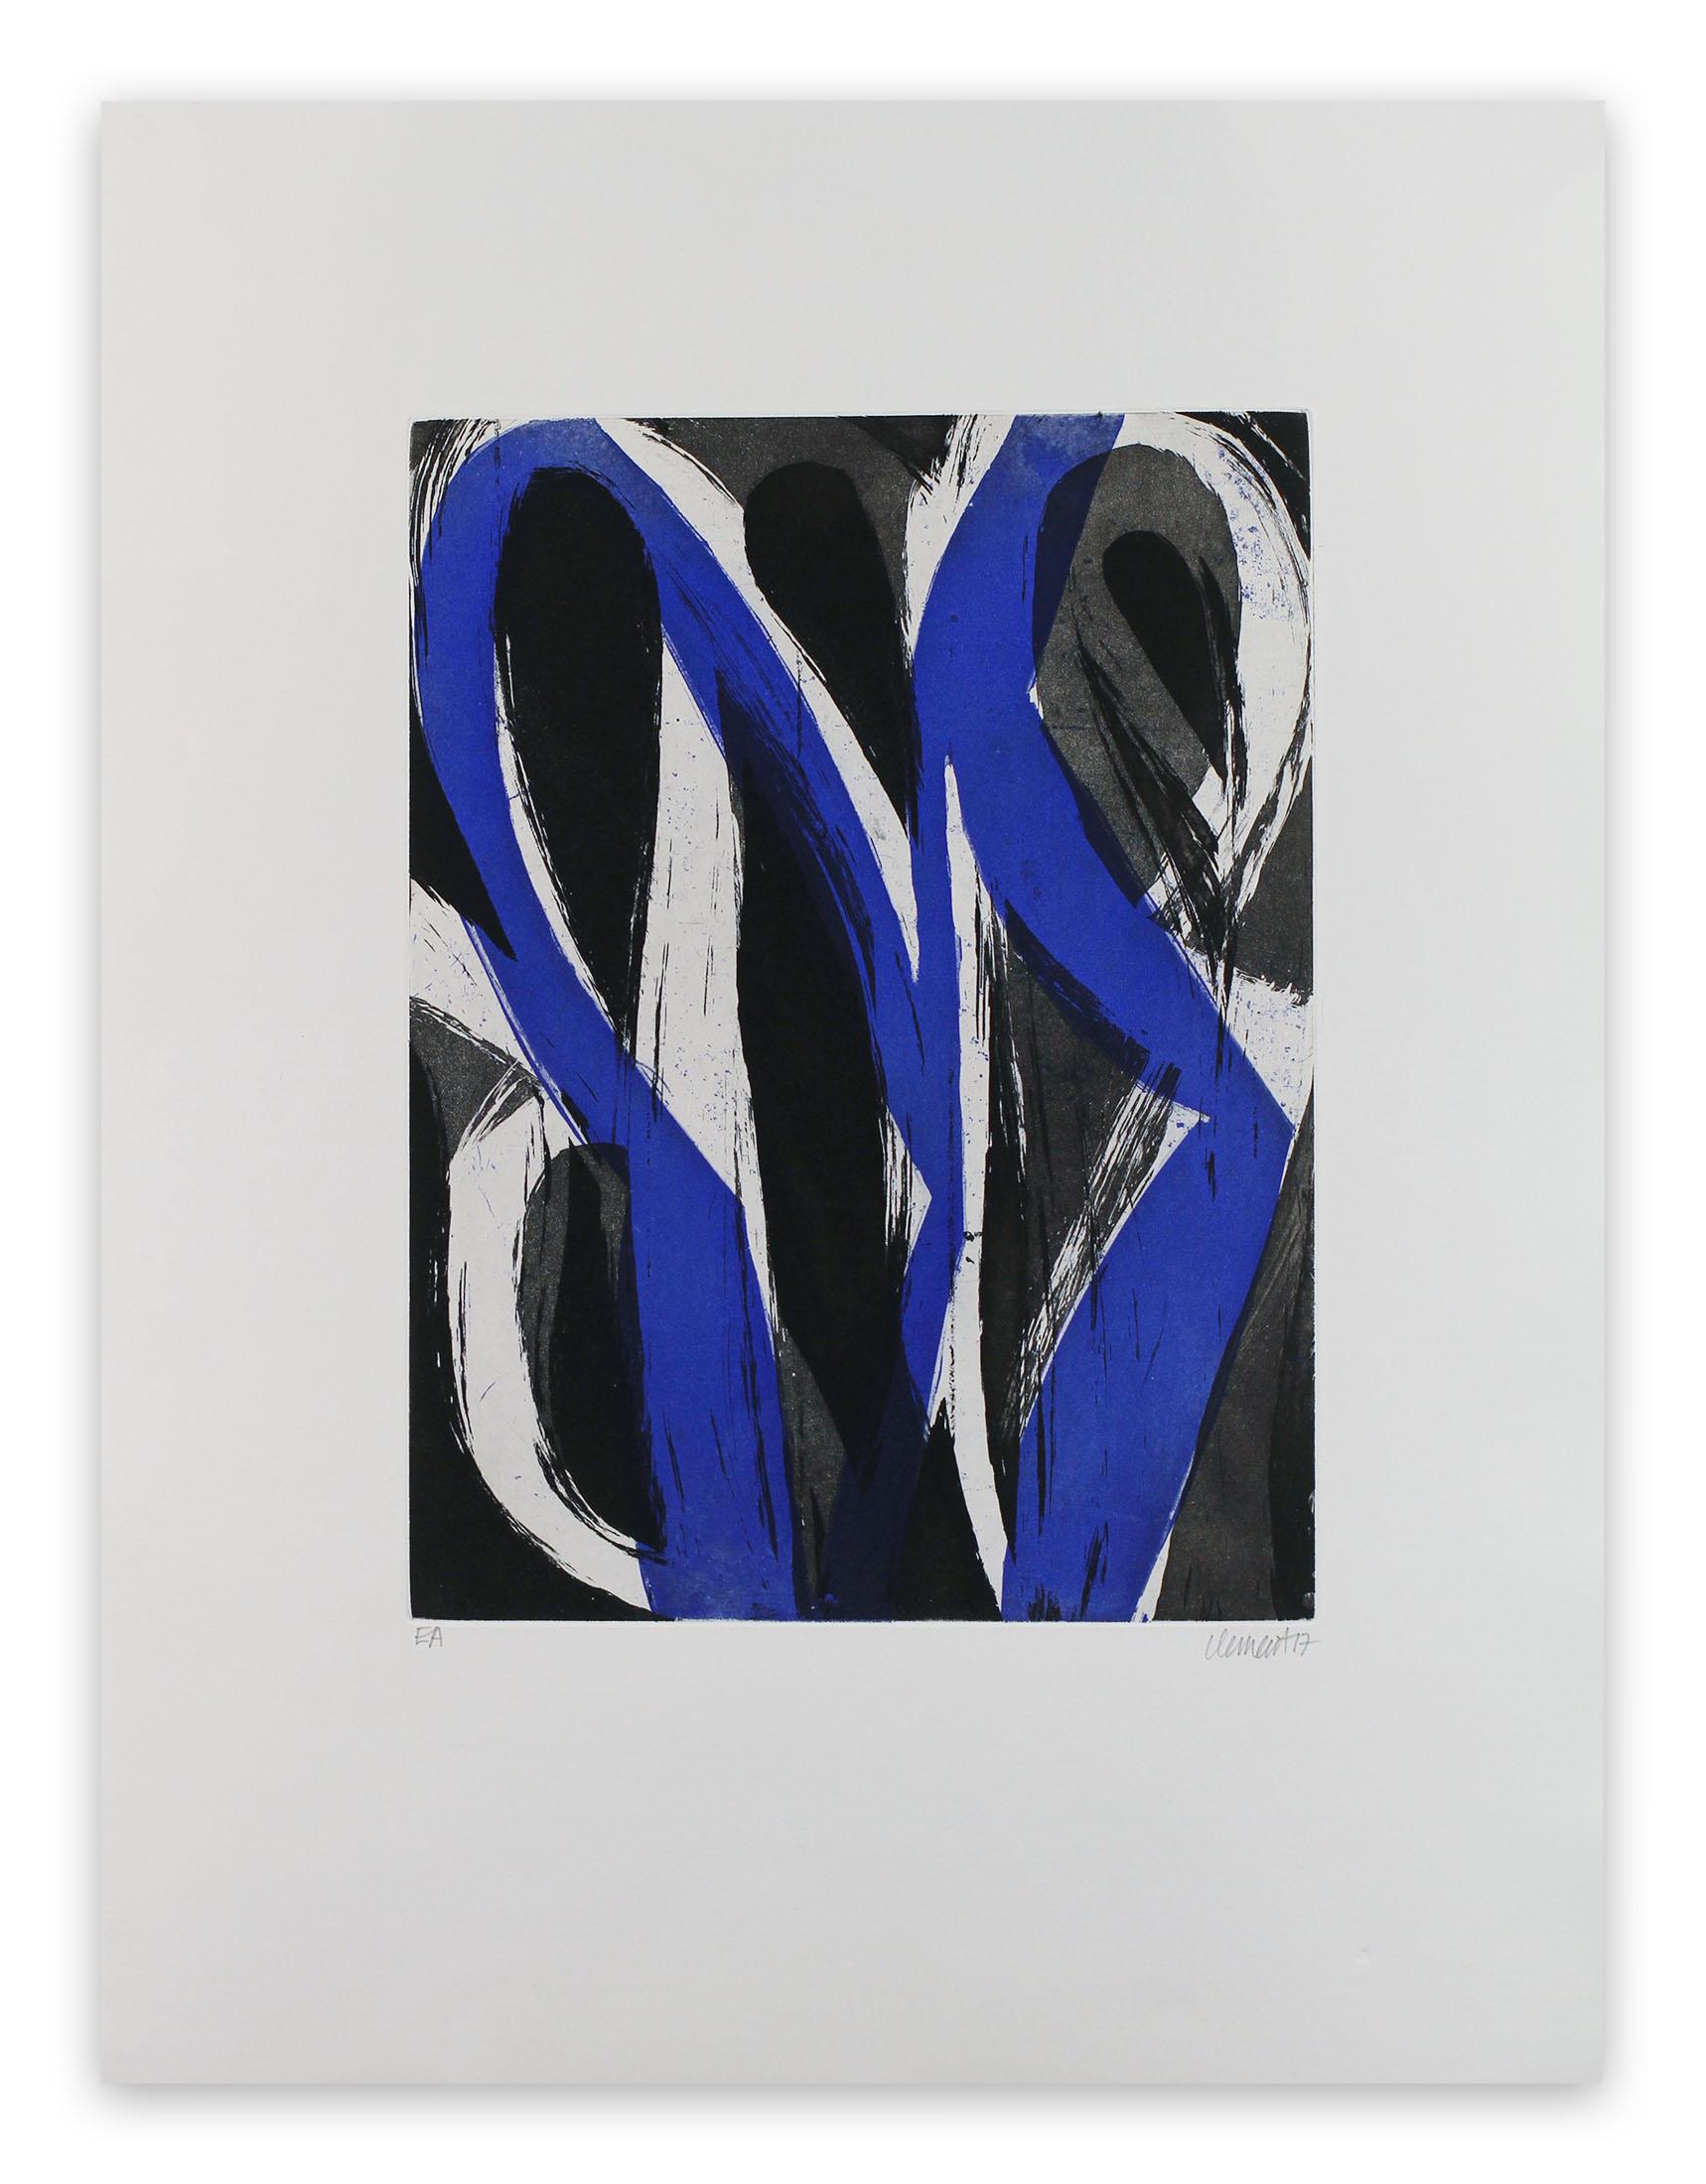 Alain Clément Abstract Print – 17M7G-2017 (Abstrakter Druck)